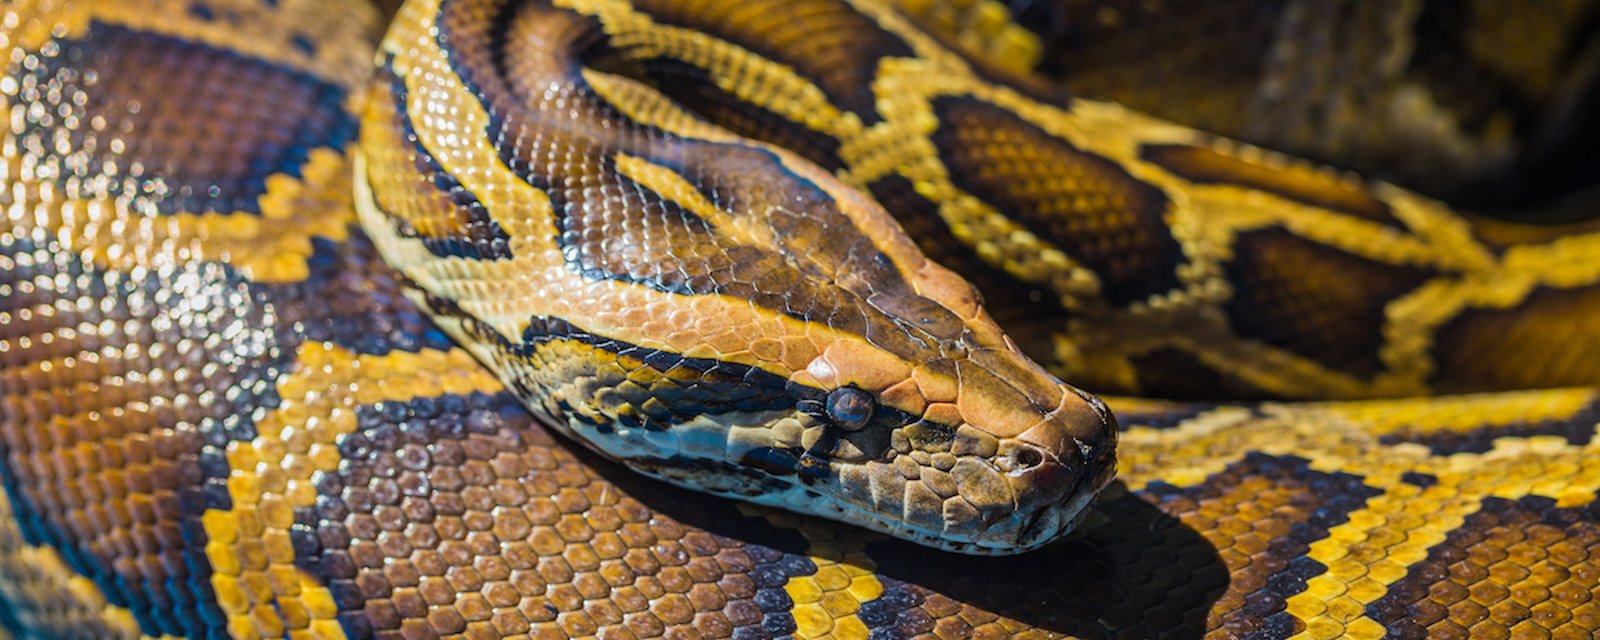 La viande de serpent pourrait être la solution pour sauver la planète